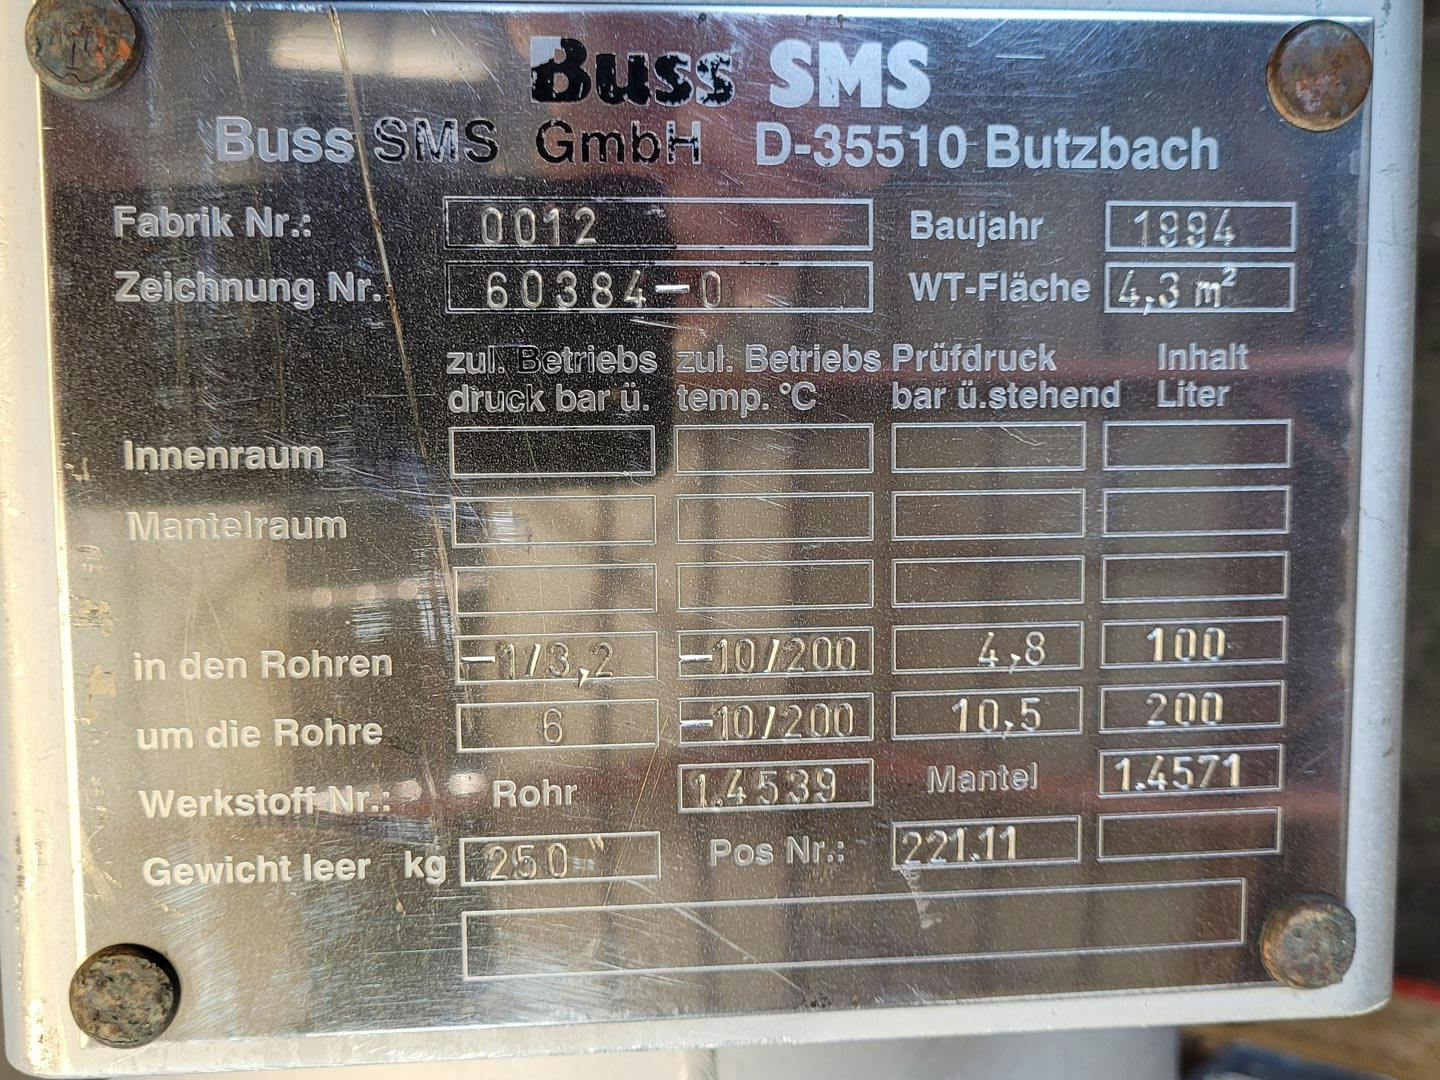 Buss-SMS 4,3 m² - Wyparka z opadającym filmem cieczy - image 8